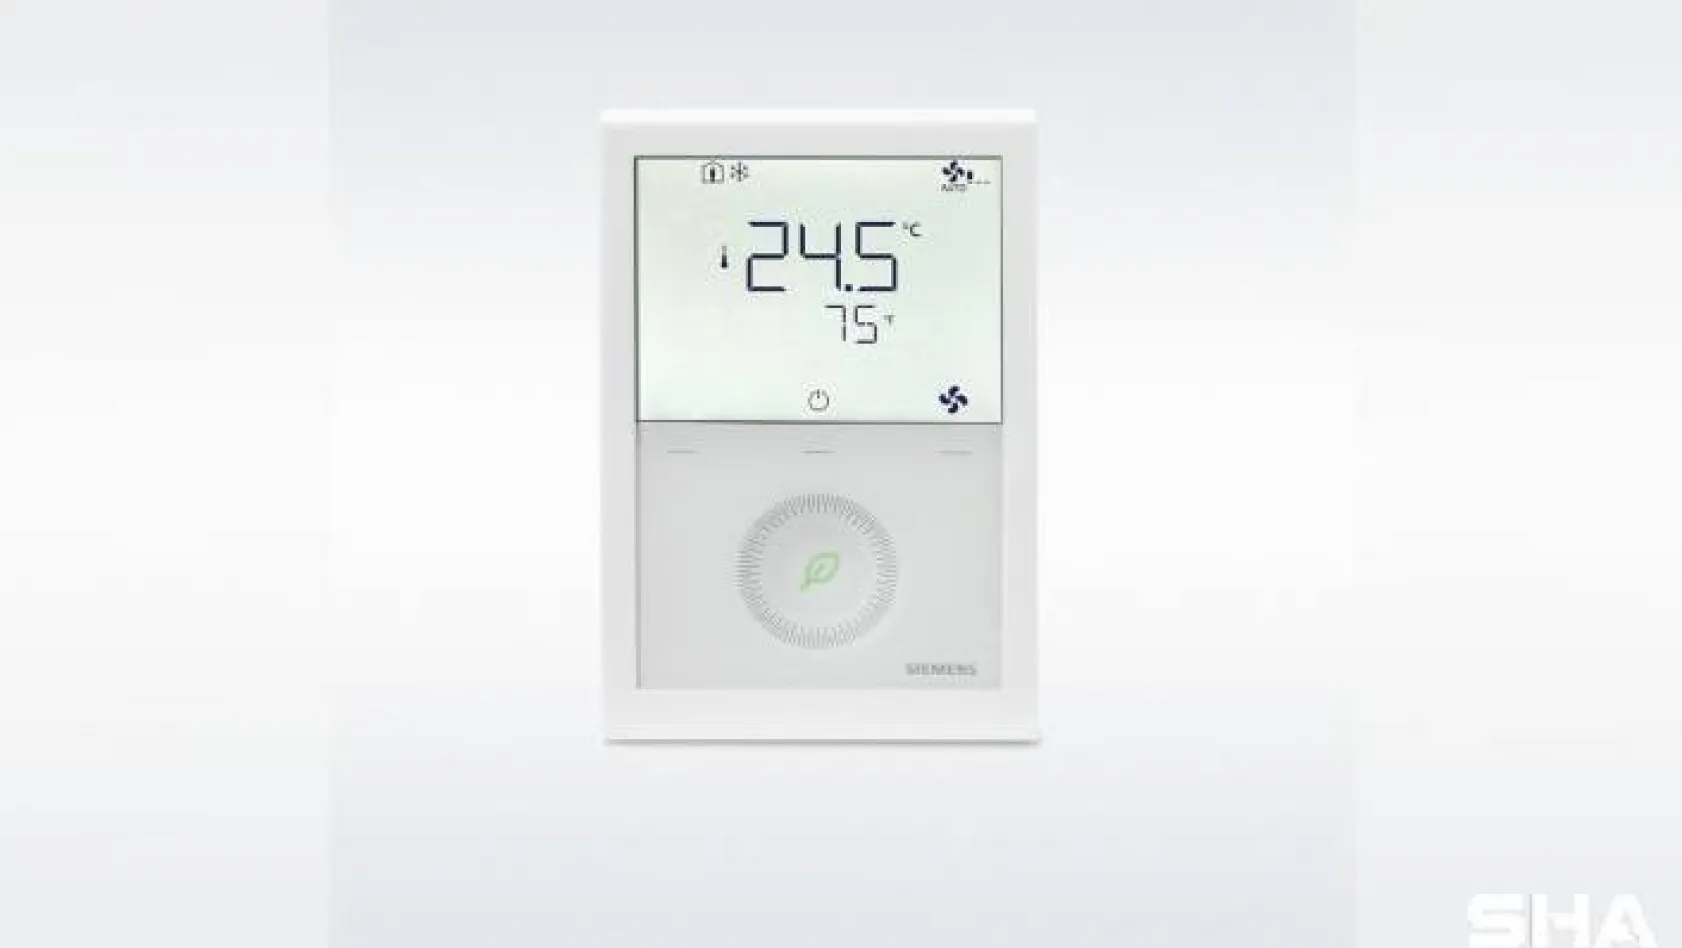 Yeni haberleşmeli termostat ailesi ile enerji tasarrufu sağlanıyor